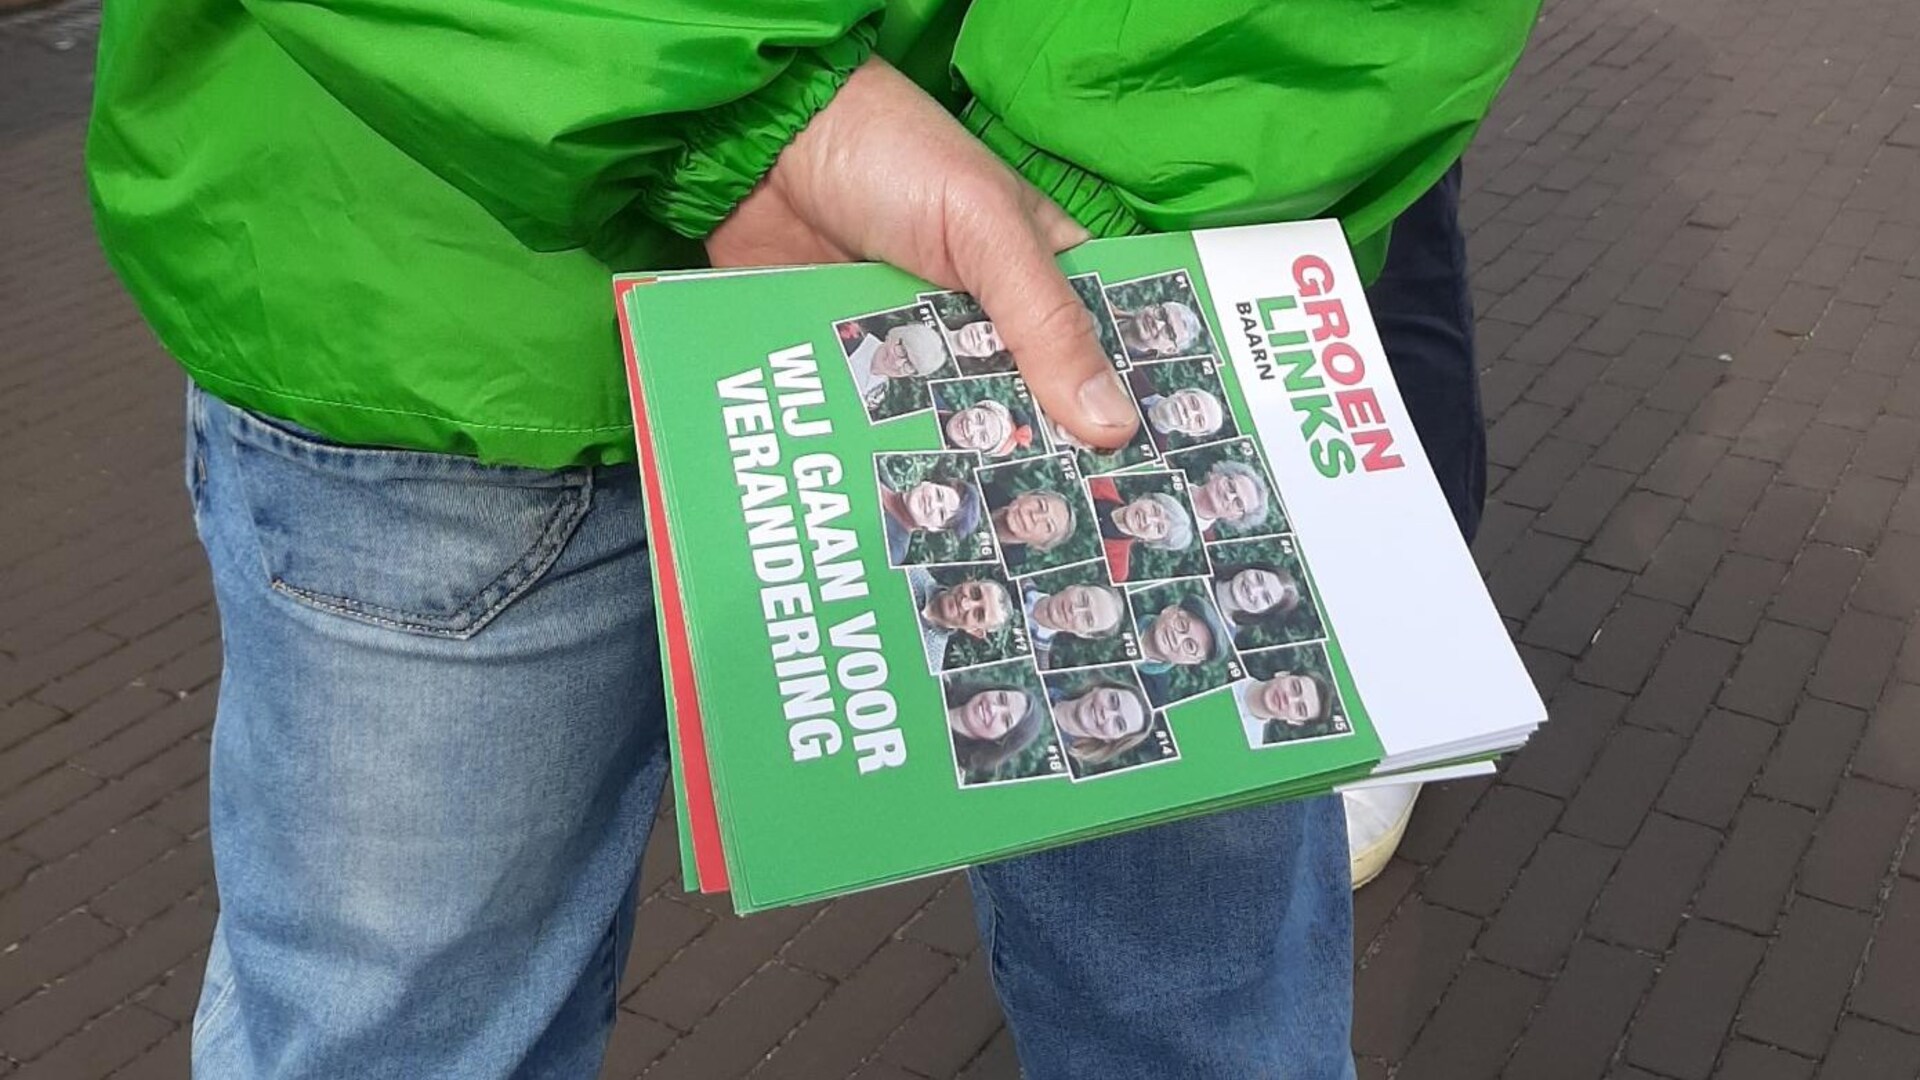 Een vrijwilliger in groen jasje houdt een stapeltje flyers vast met daarop de tekst: Wij gaan voor verandering. 